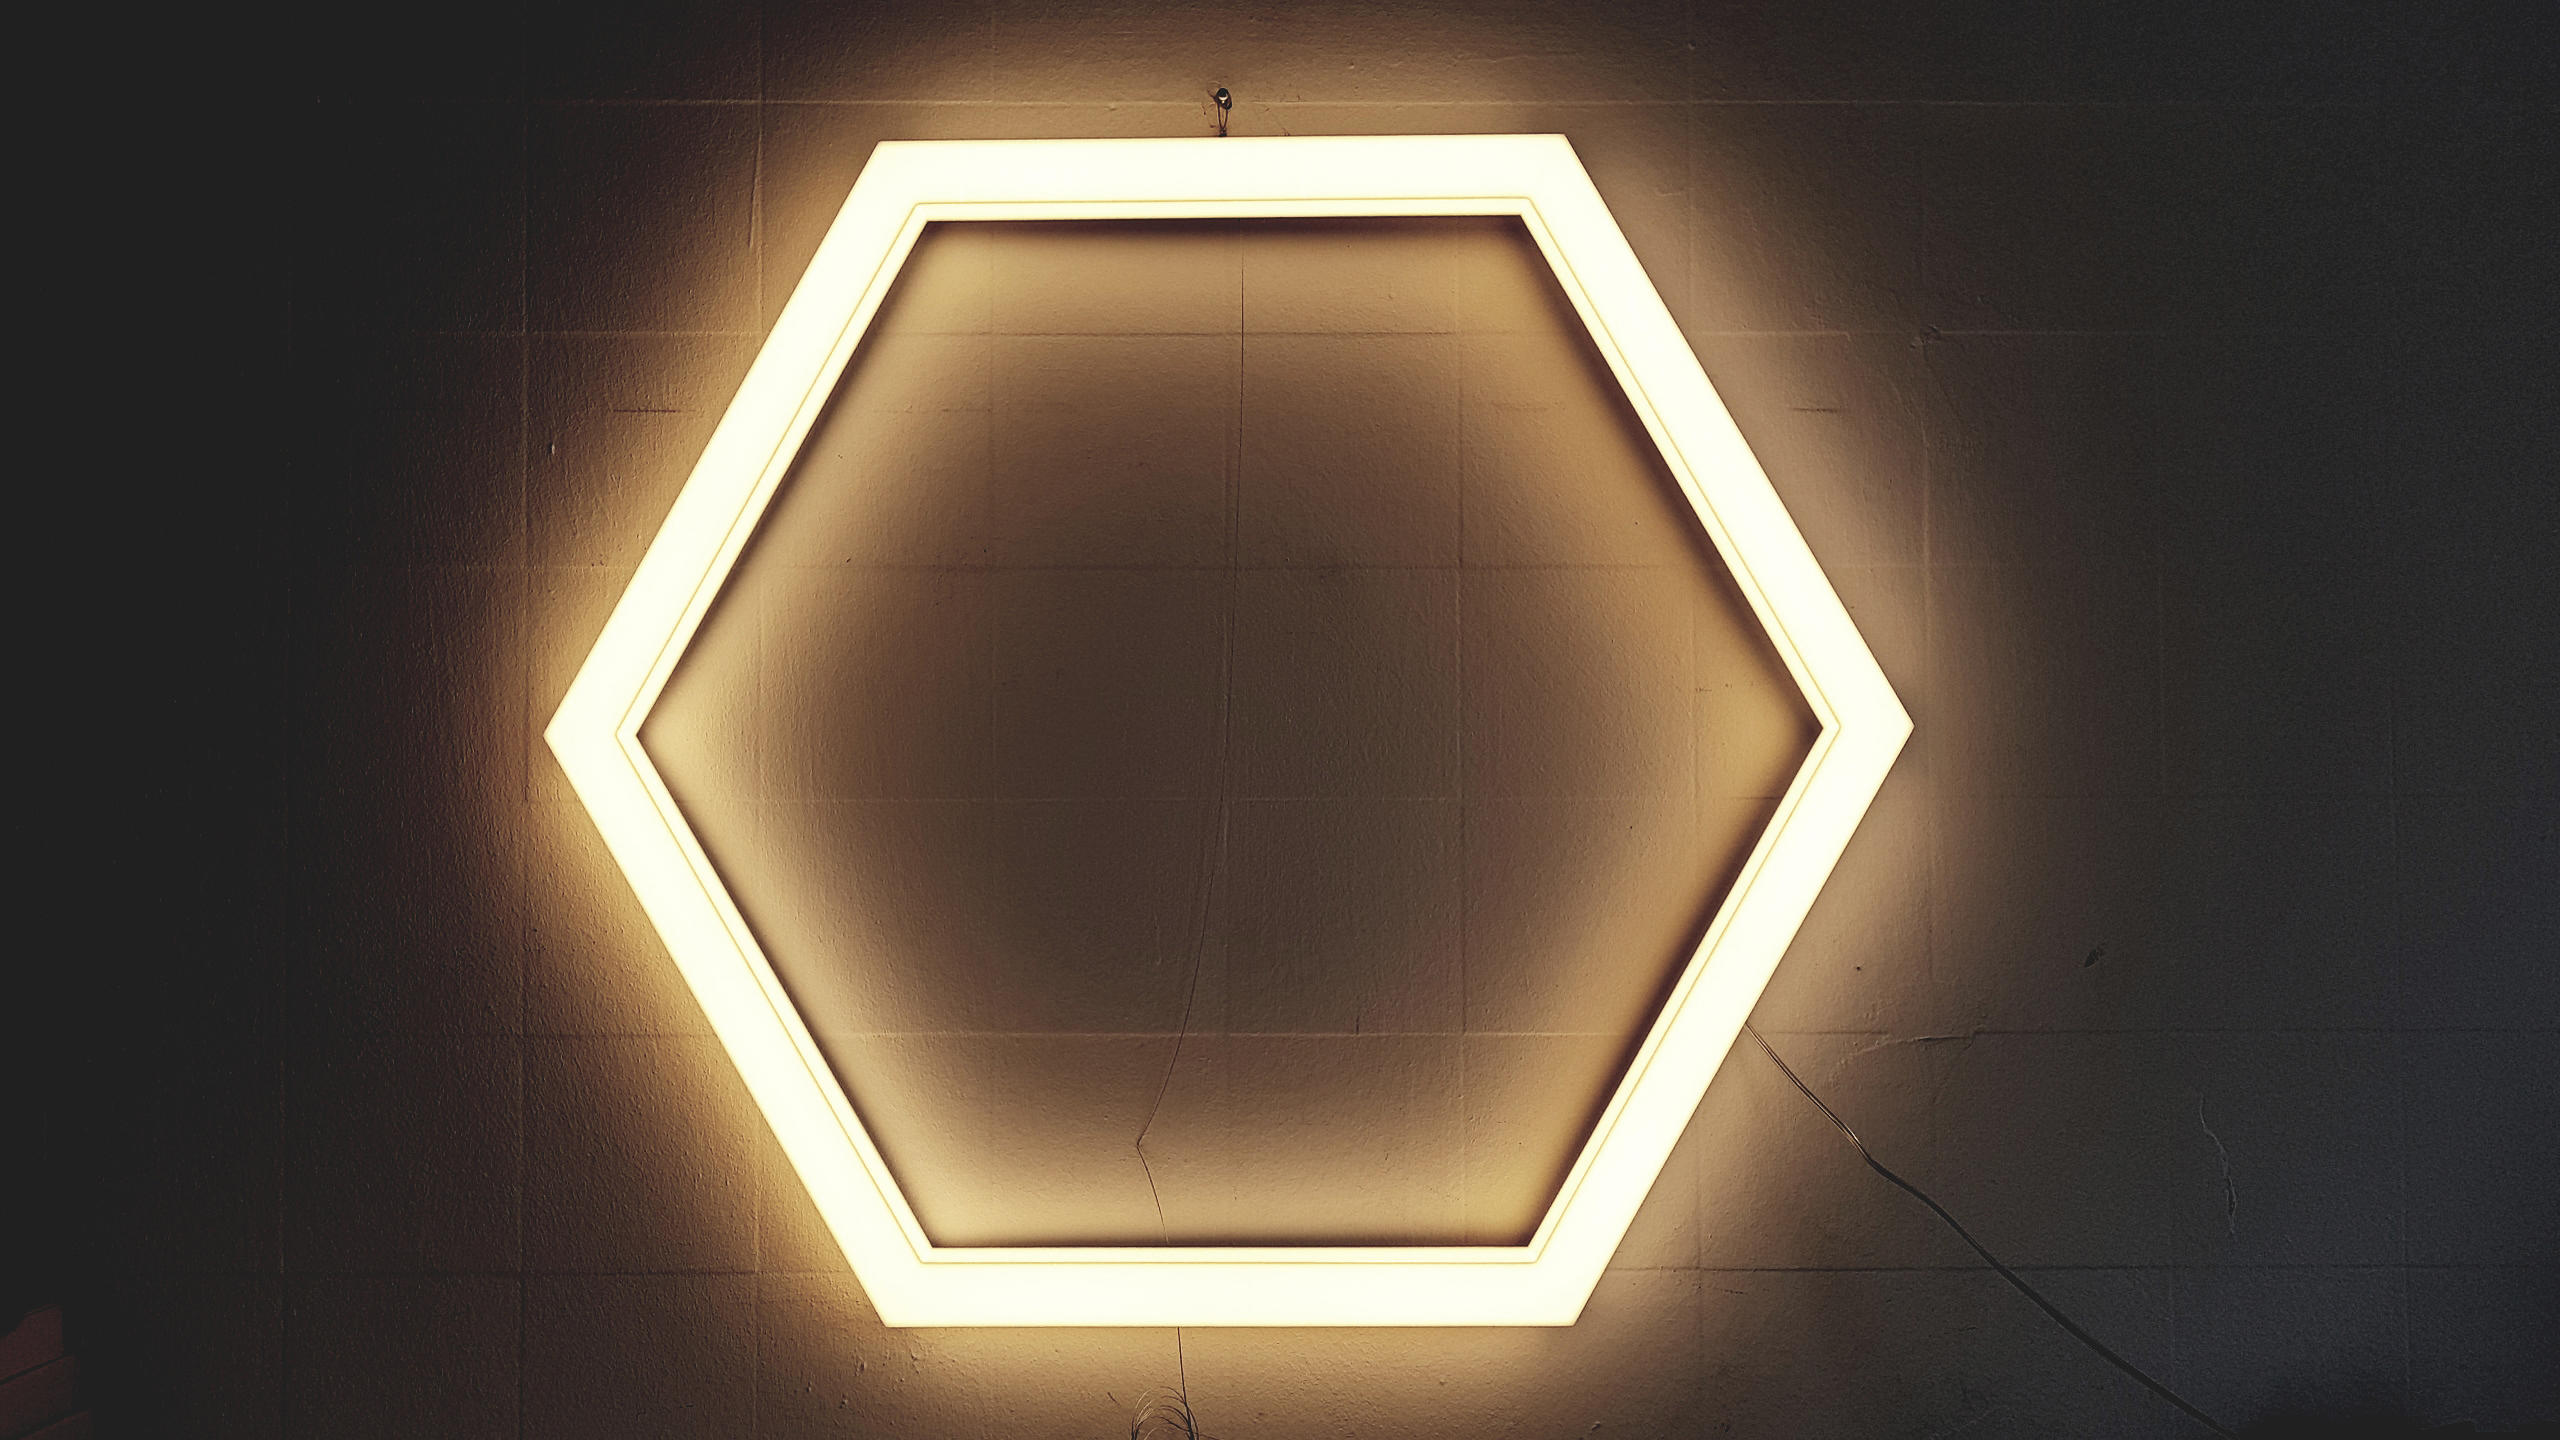 Hexagon LED Ceiling Light